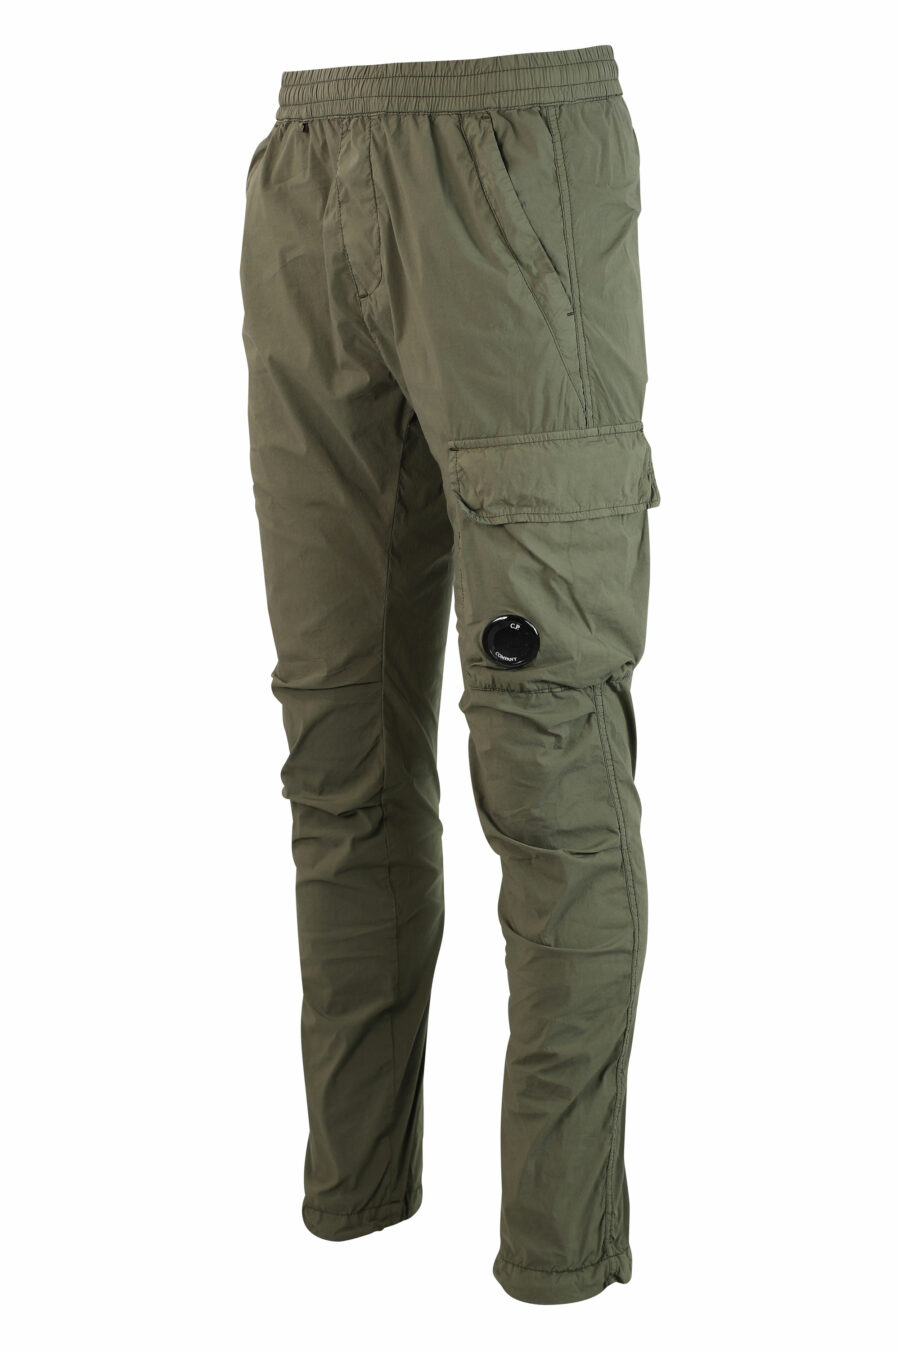 Pantalón verde militar con minilogo circular lateral - IMG 9856